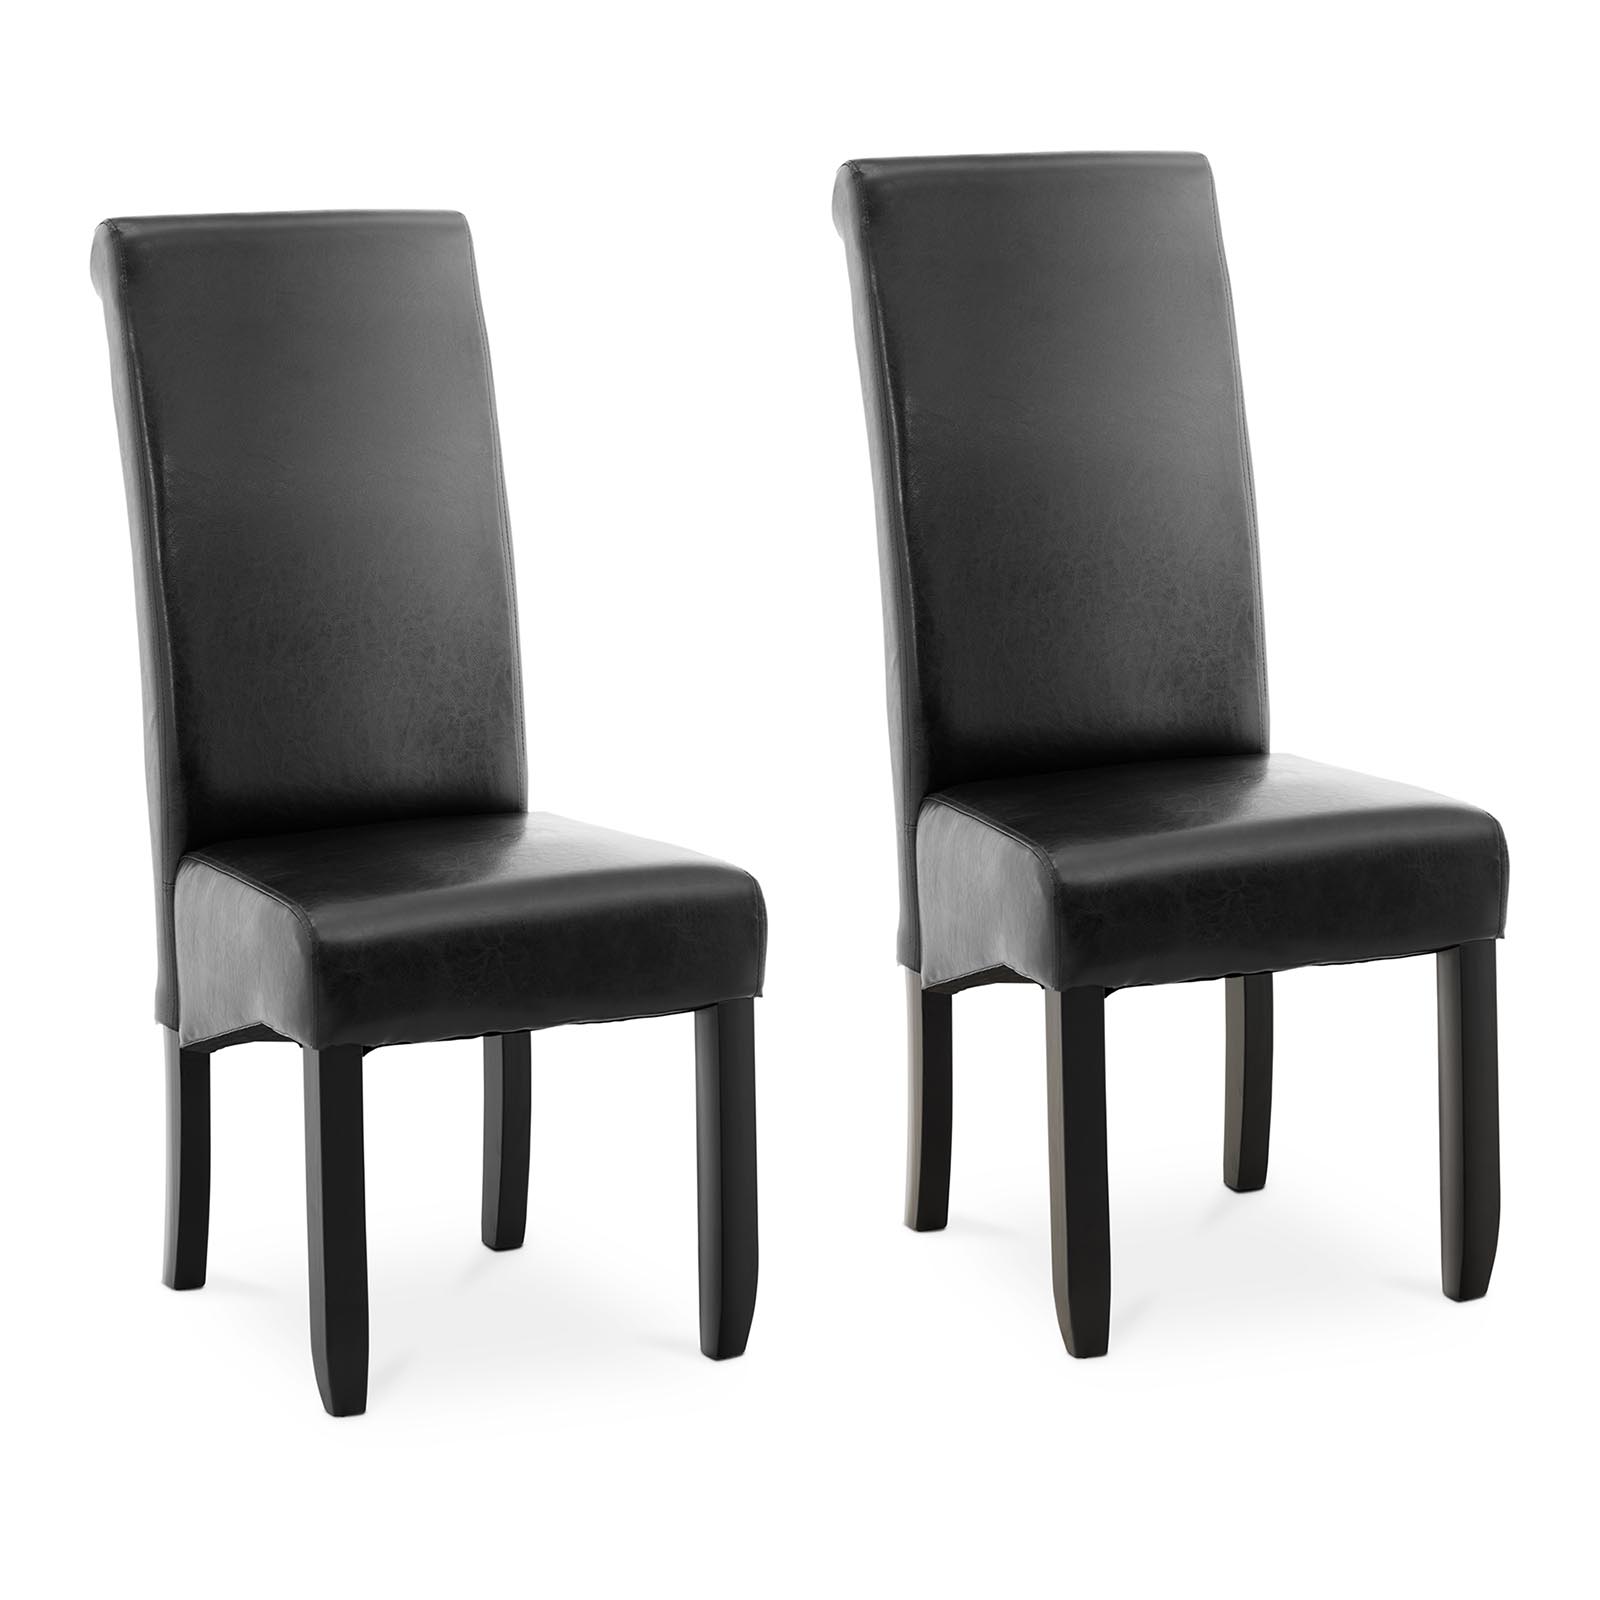 Produtos recondicionados Cadeira estofada - em preto - couro ecológico - 2 un.